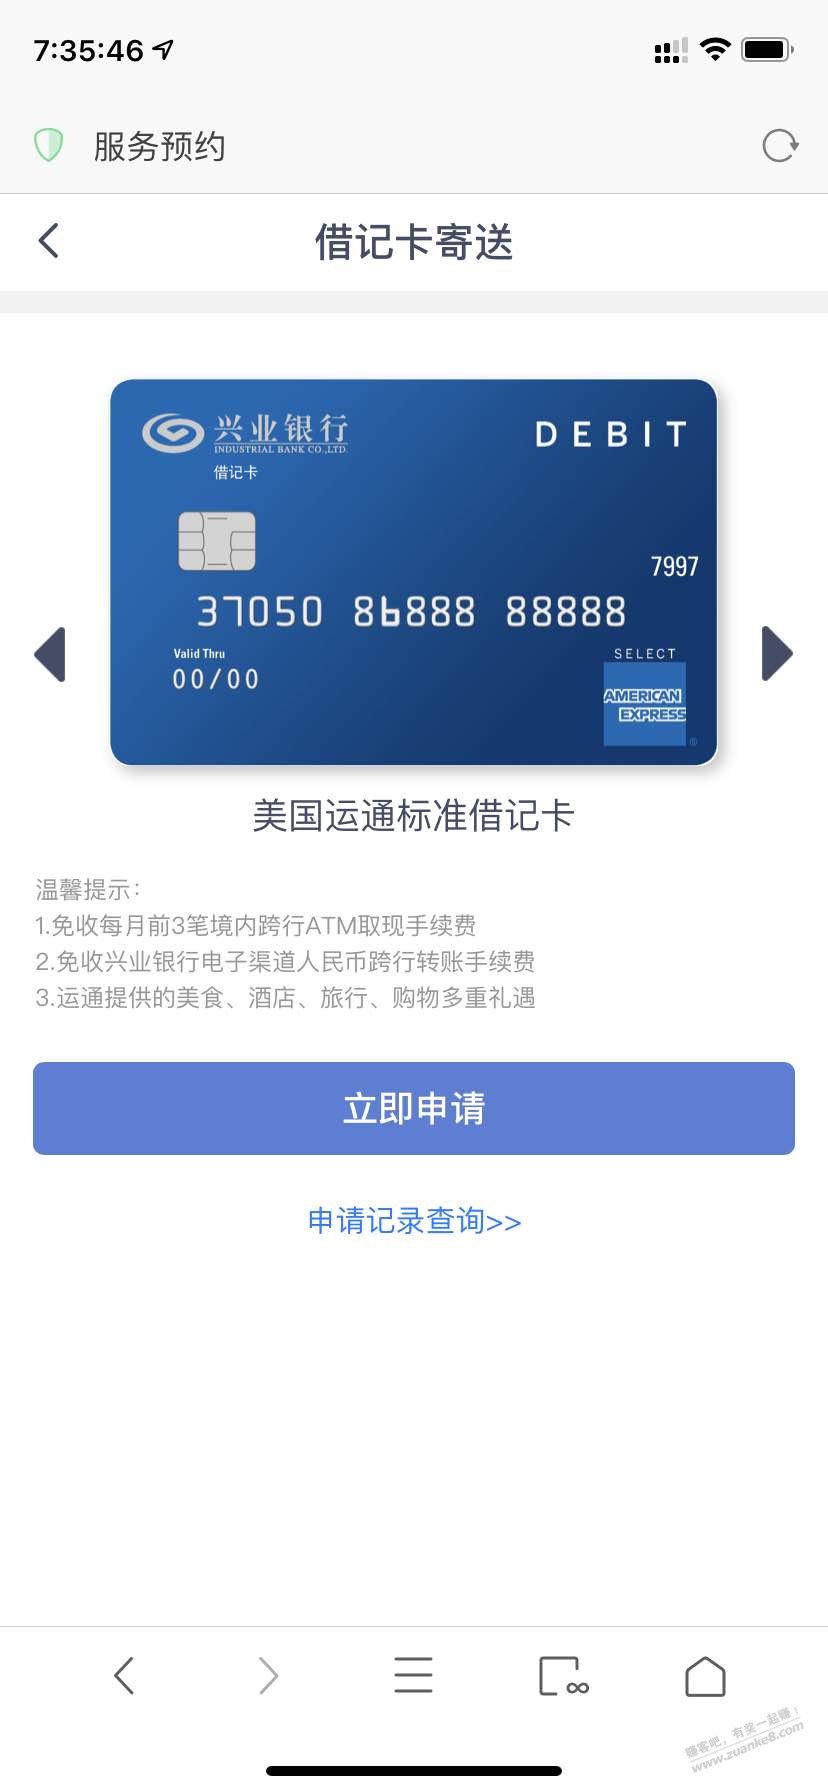 兴业借记卡网申入口（包含美国运通卡）（附链接）